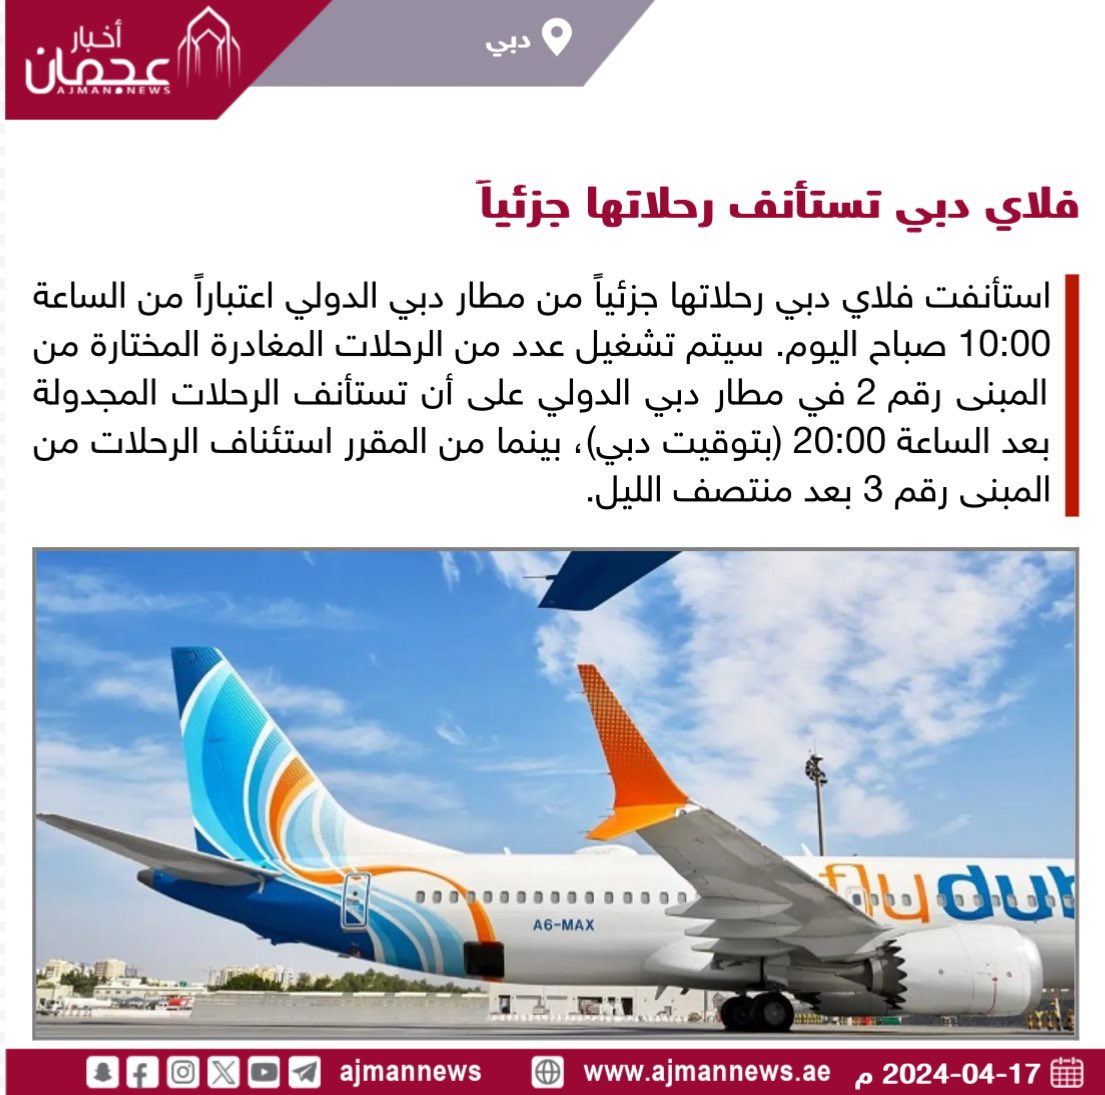 فلاي دبي تستأنف رحلاتها جزئياً ajmannews.ae/120985 #أخبار_الإمارات  #أخبار  #أخبار_اليوم  #أخبار_عربية  #مركز_الأخبار #دبي  #أخبار_دبي